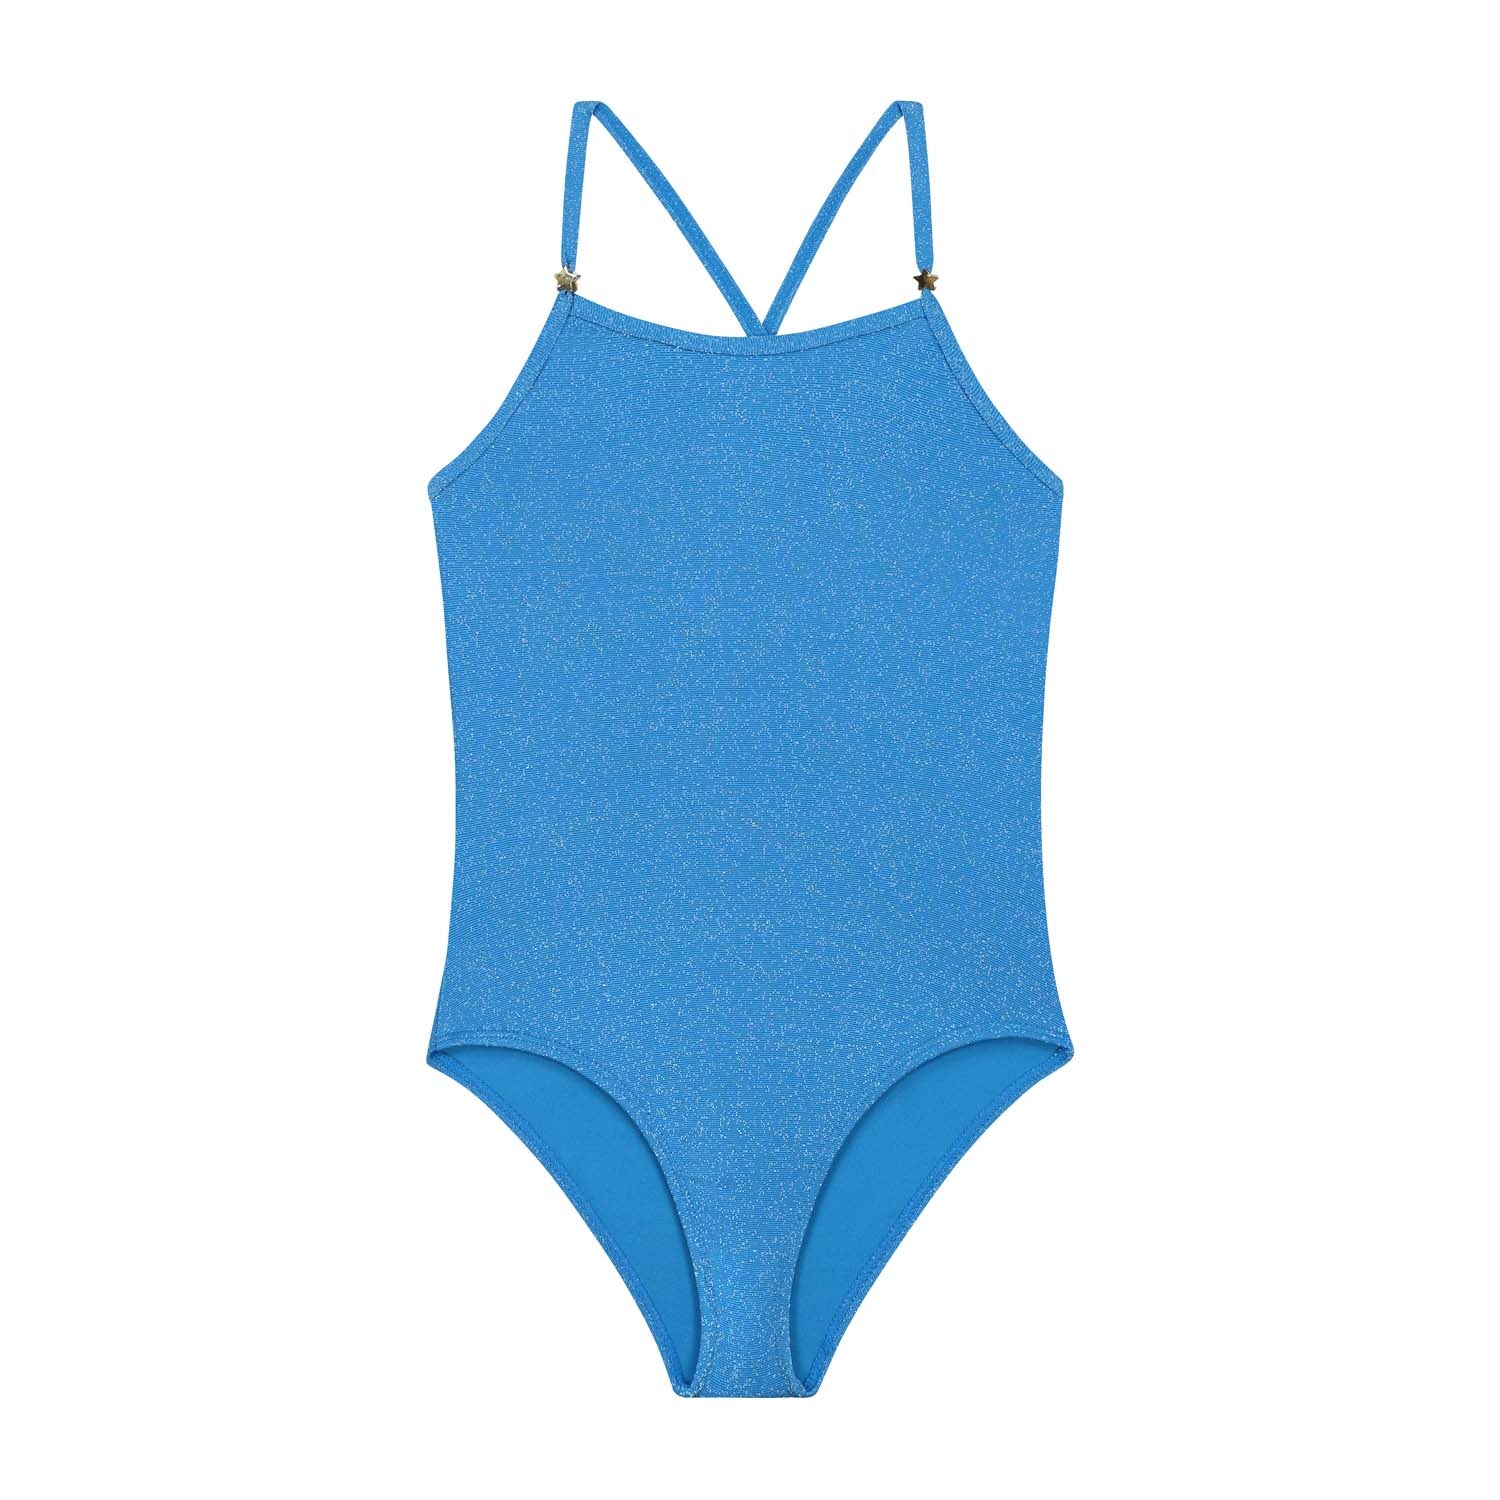 Meisjes LOIS swimsuit SICILY GLITTER van Shiwi in de kleur sports blue in maat 170-176.